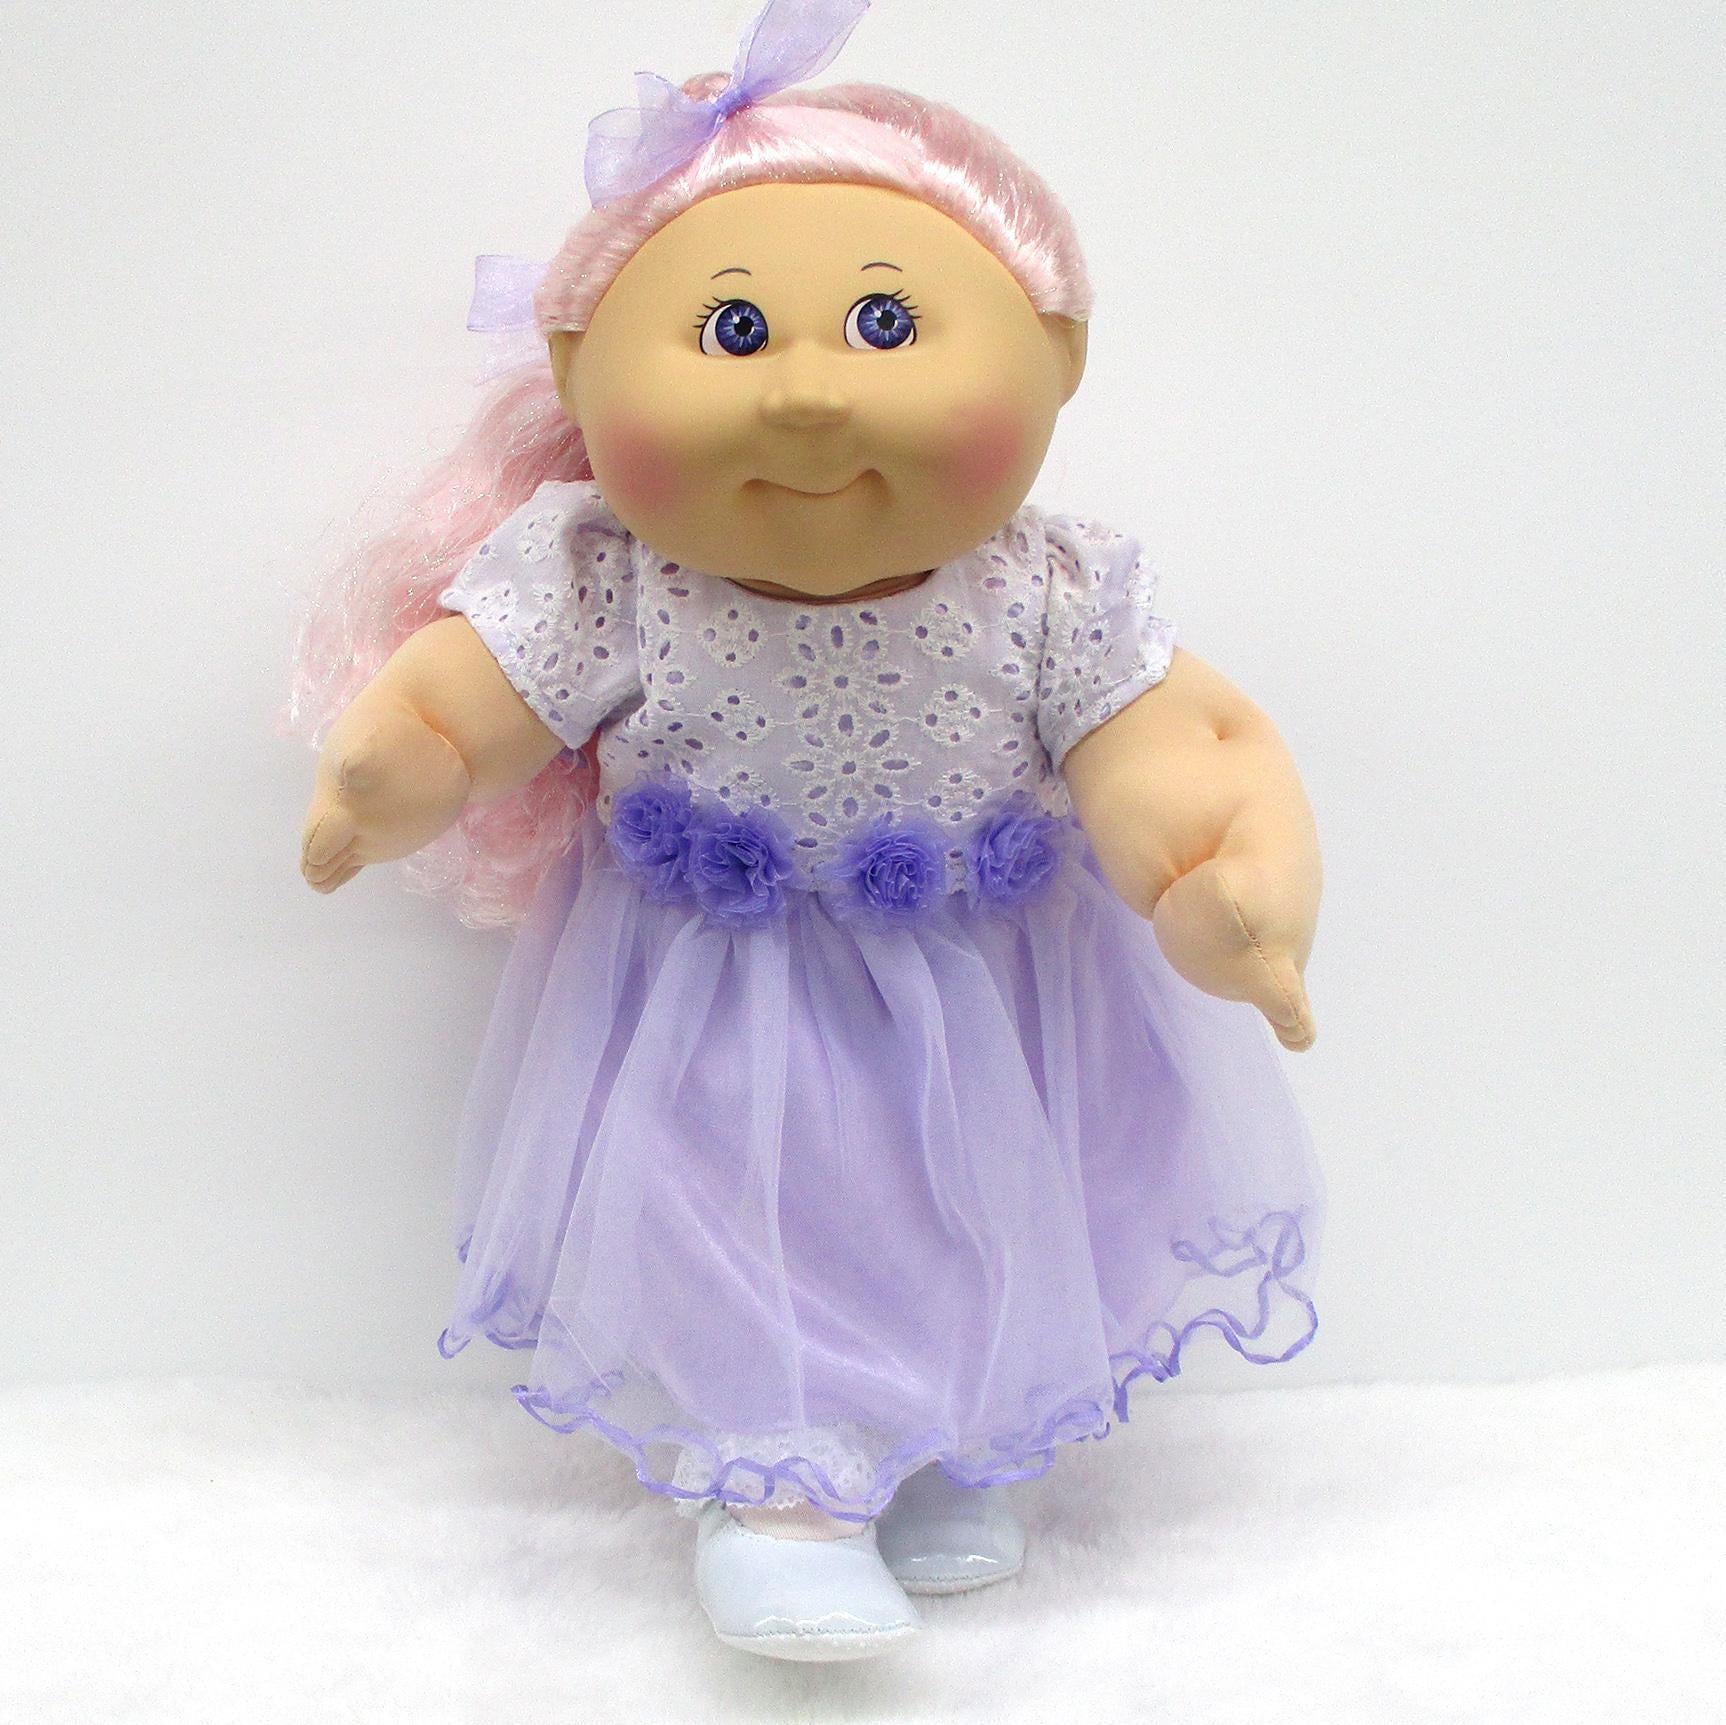 CPW1181-White Eyelet & Purple Net Dress